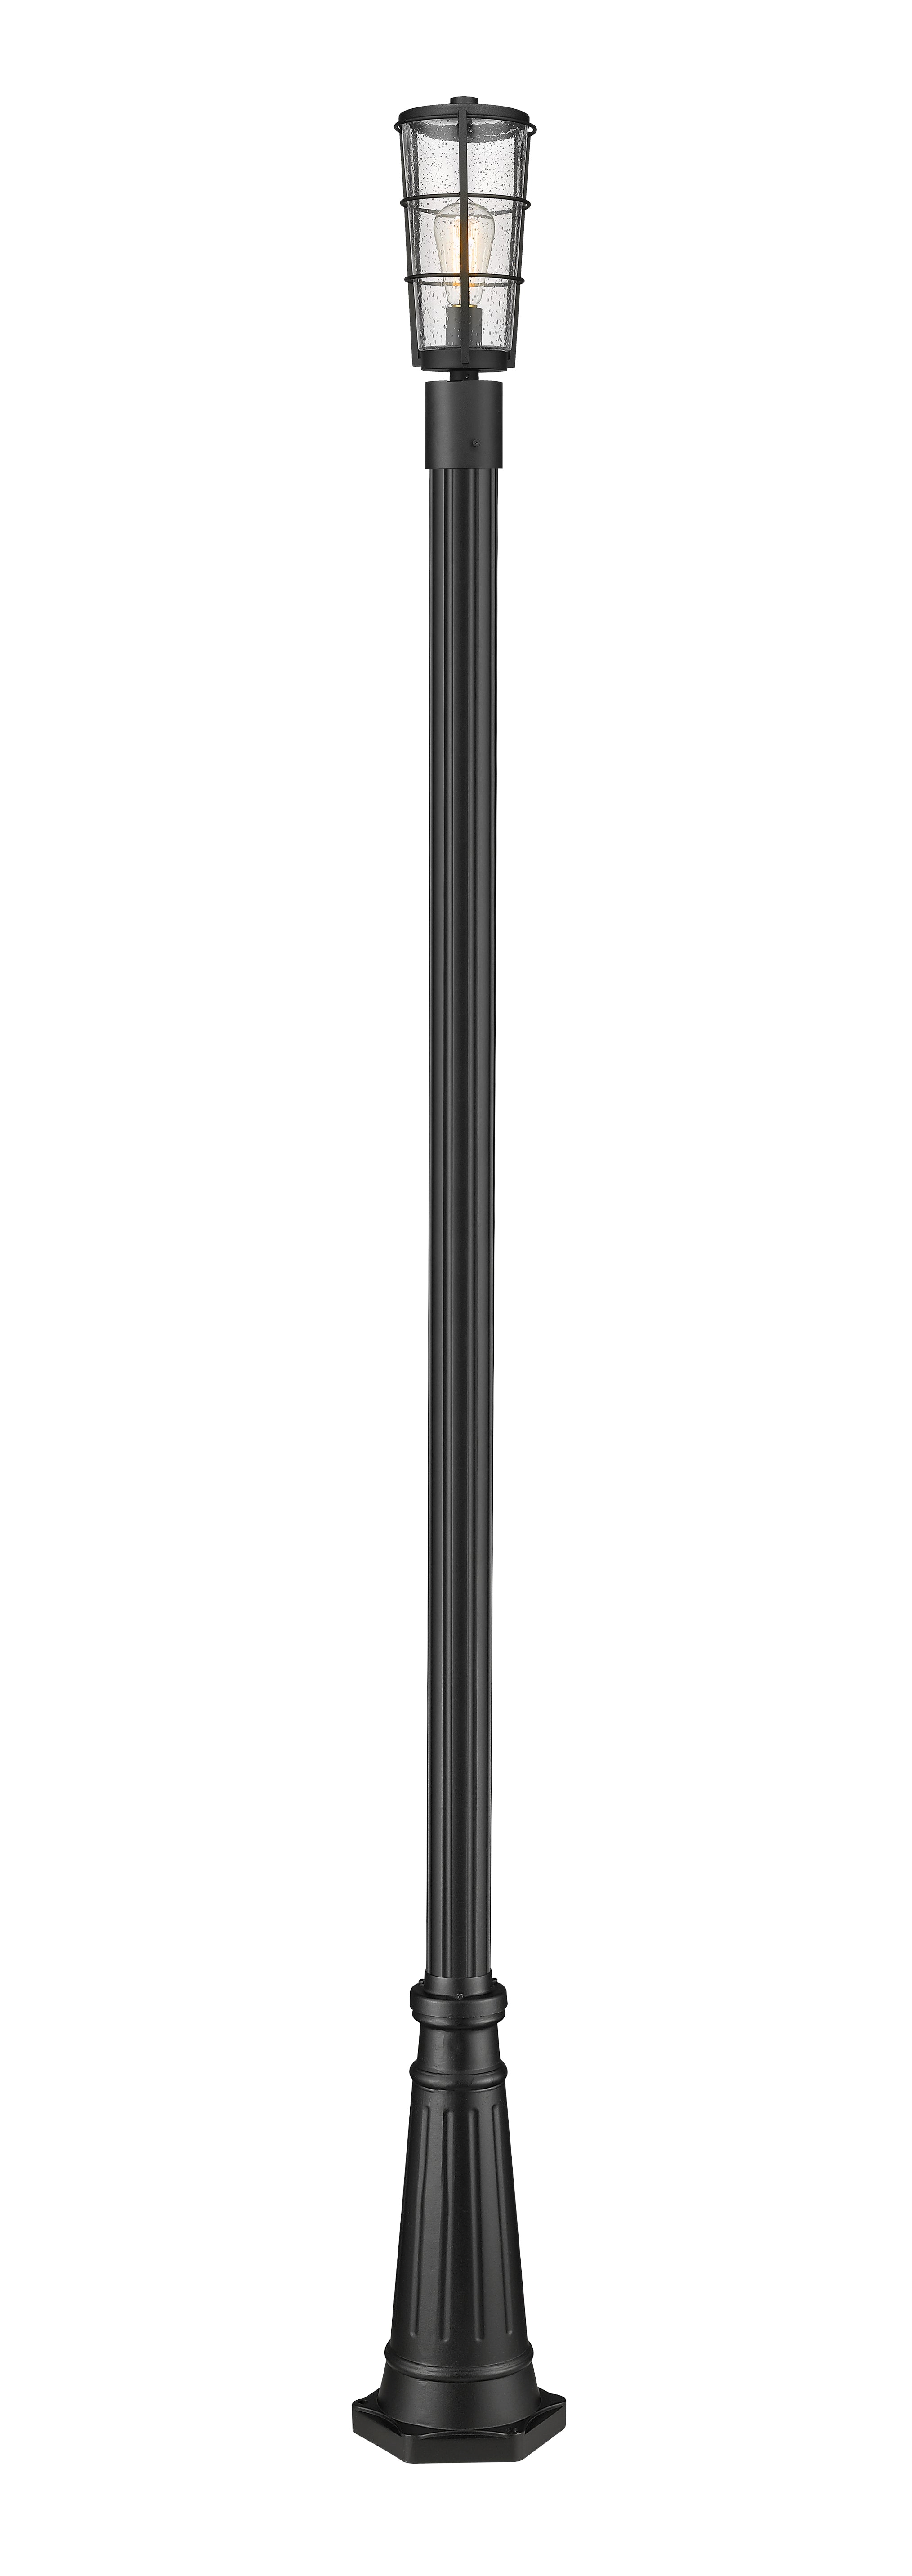 HELIX Luminaire sur poteau Noir - 591PHM-519P-BK | Z-LITE